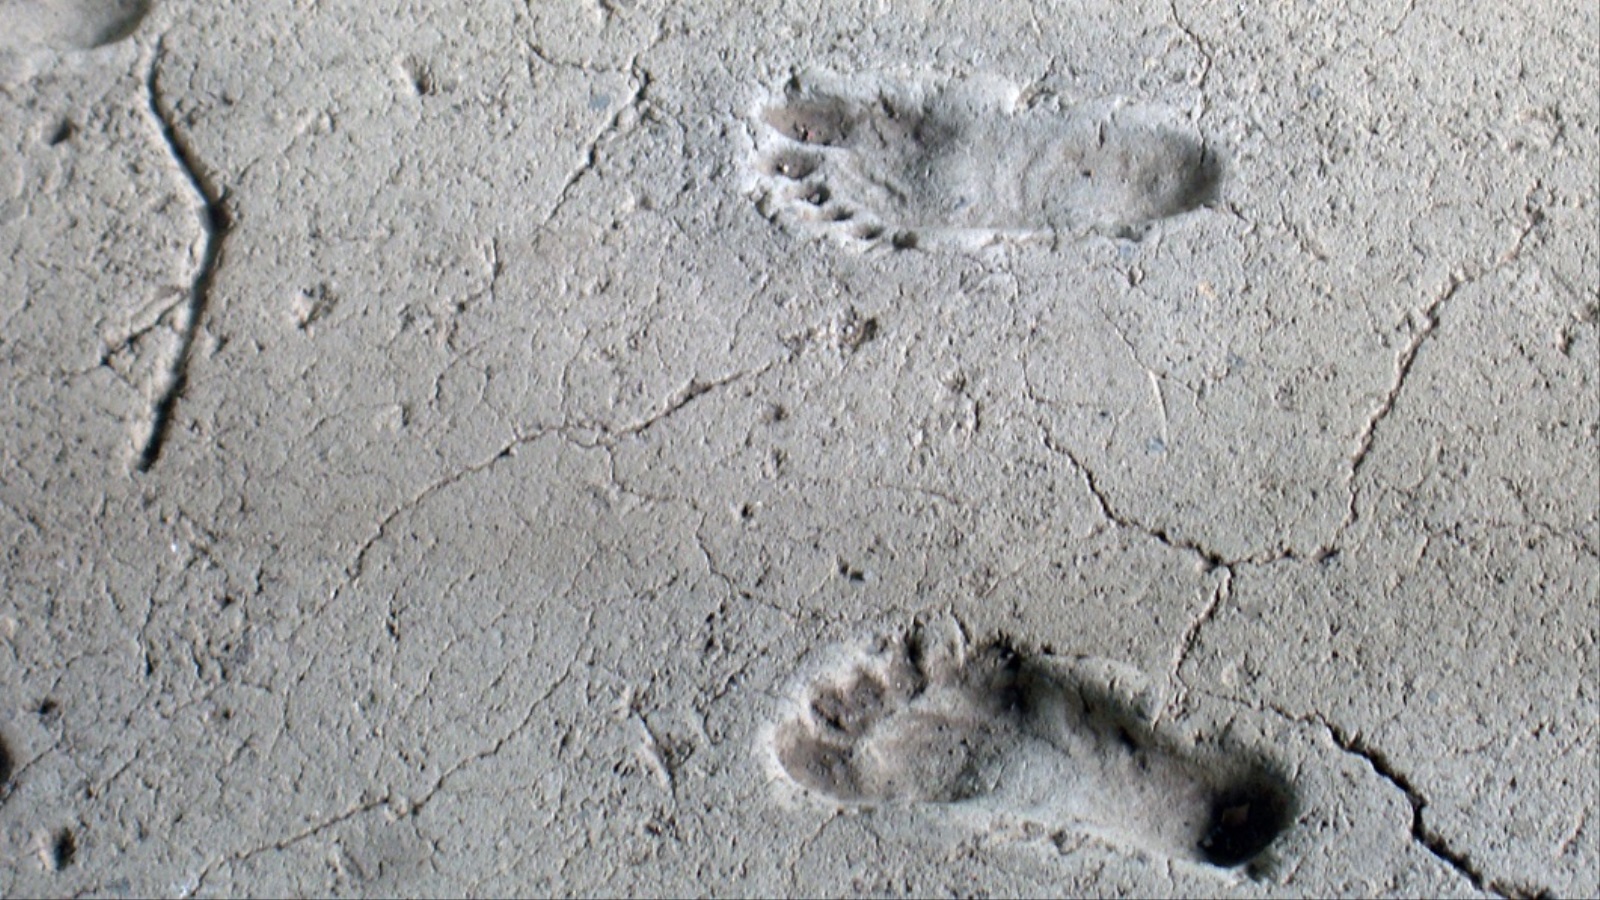 ‪ليست المرة الأولى التي تكتشف فيها آثار أقدام بمنطقة أنجار سيرو التنزانية (ويكيميديا)‬ ليست المرة الأولى التي تكتشف فيها آثار أقدام بمنطقة أنجار سيرو التنزانية (ويكيميديا) 